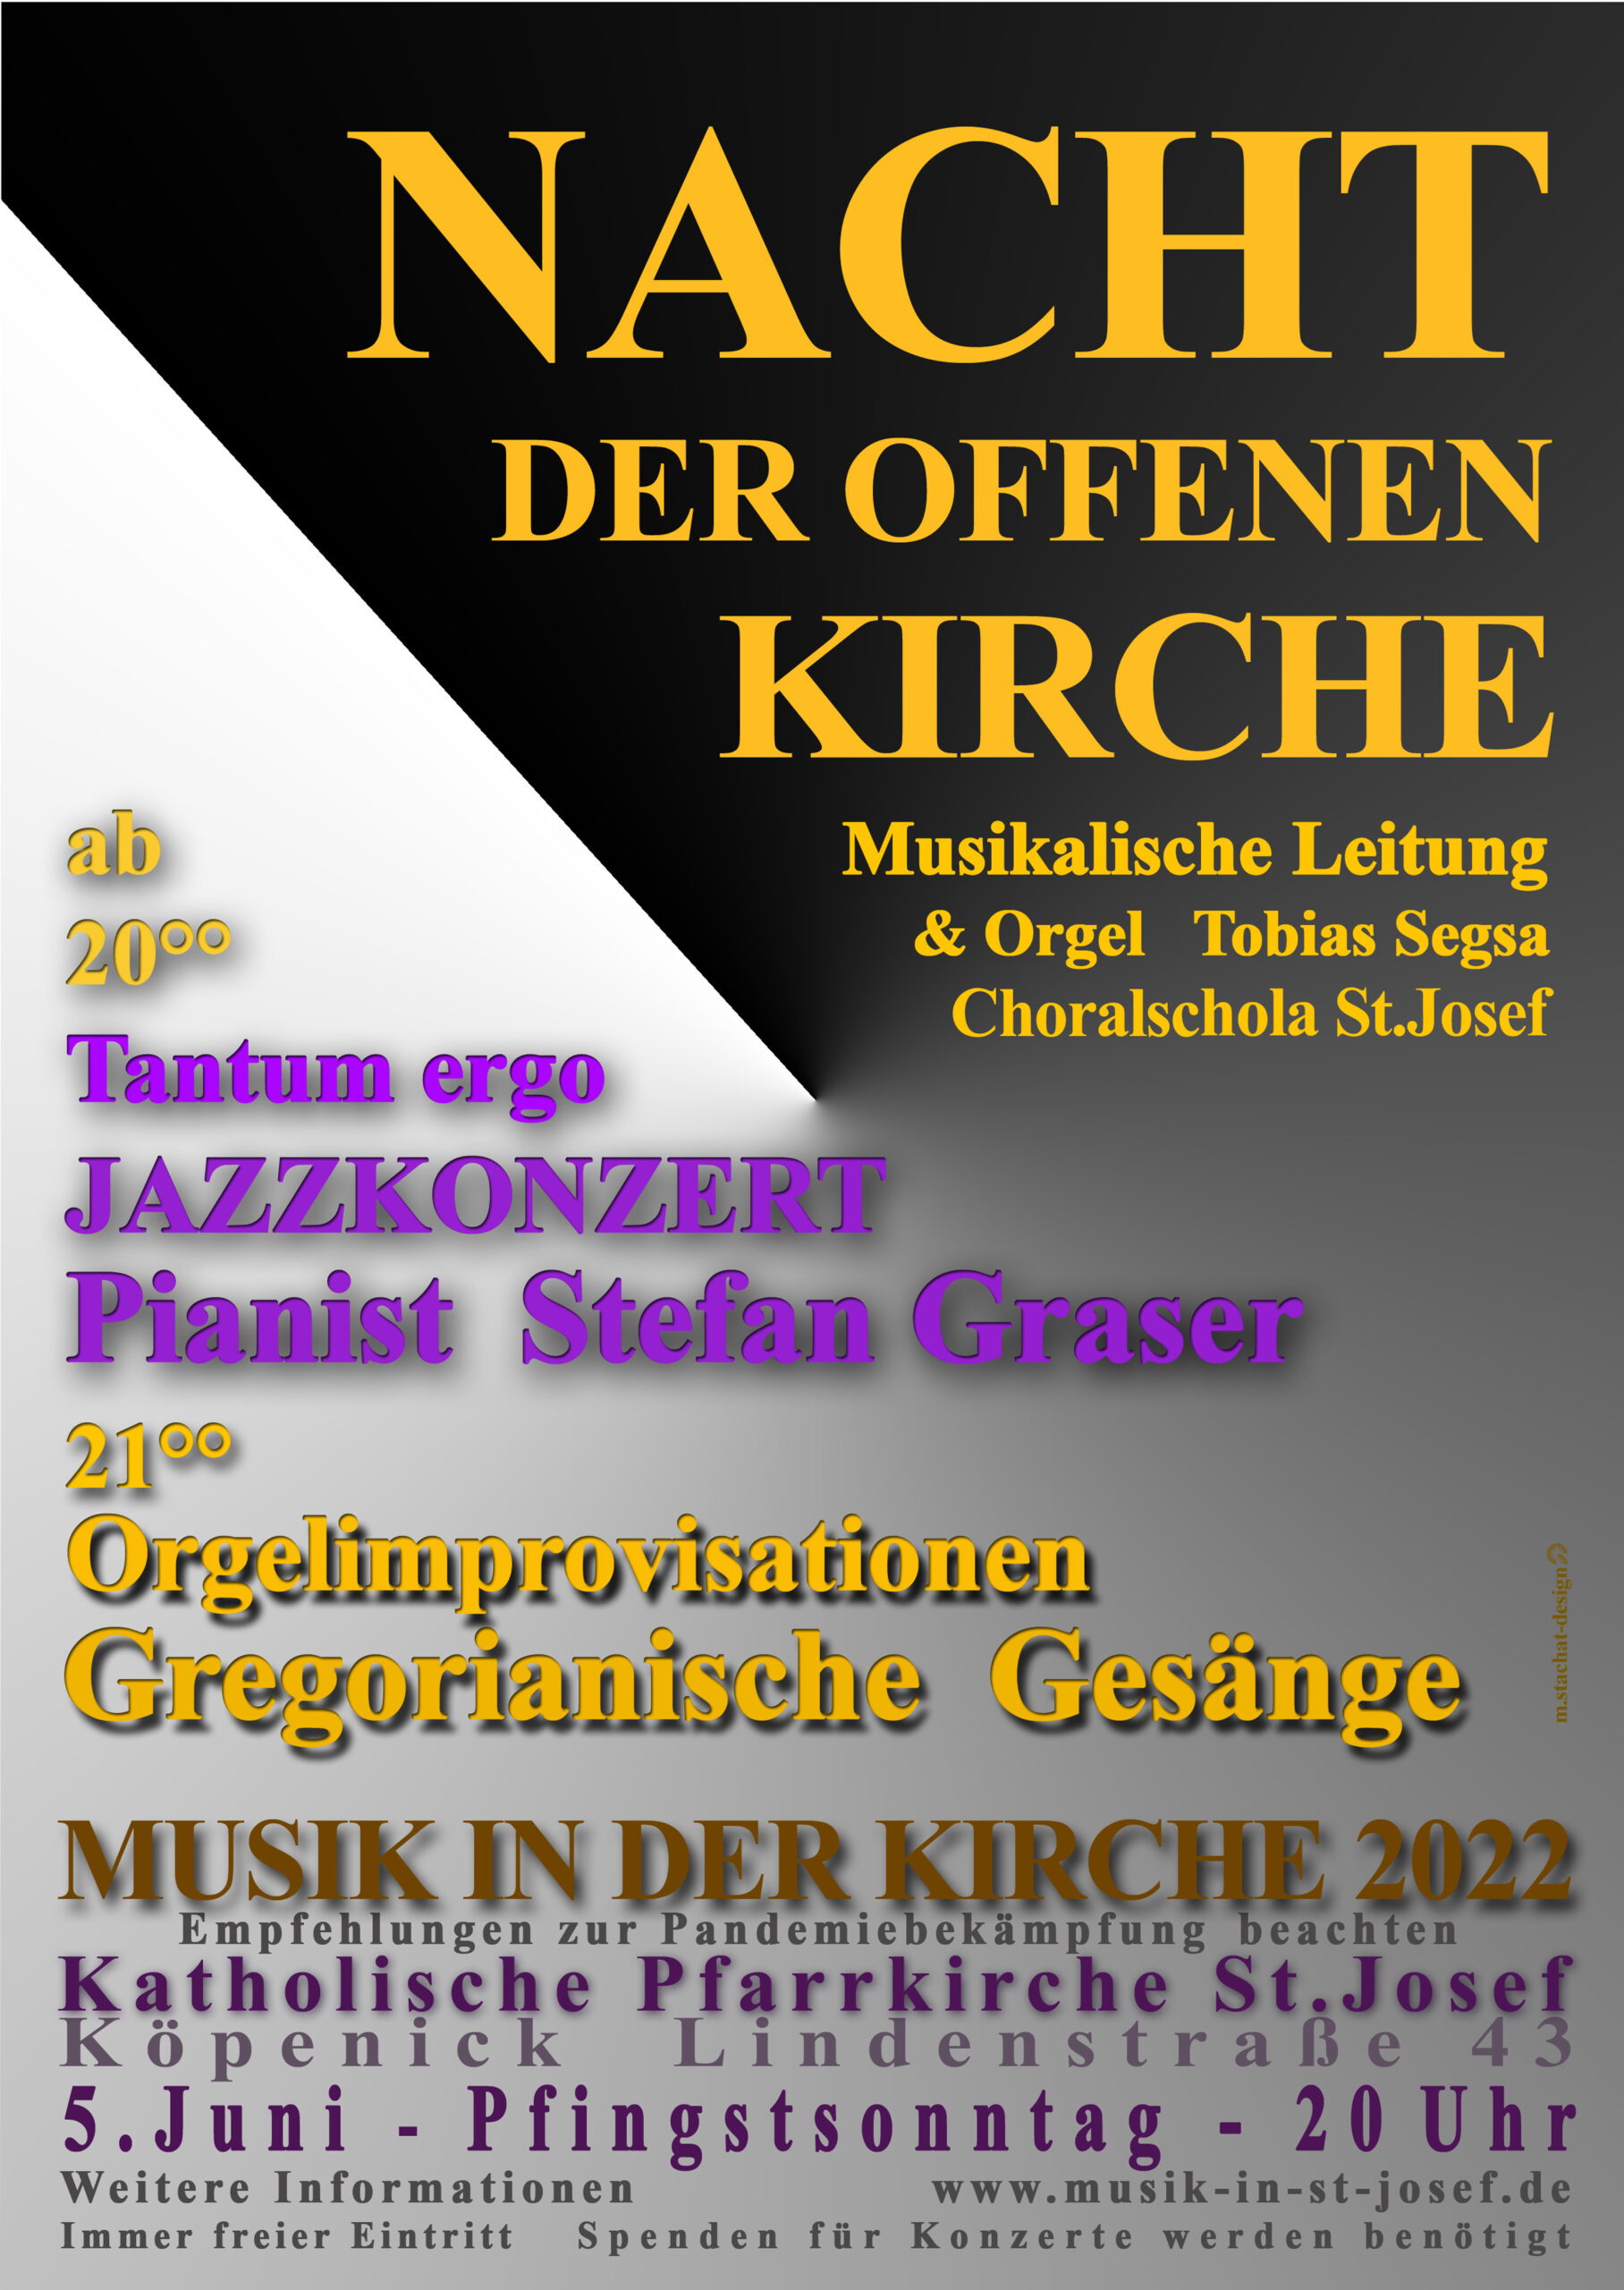 Konzerte am Pfingstsonntag, 5.6. ab 20 Uhr zur Nacht der offenen Kirche